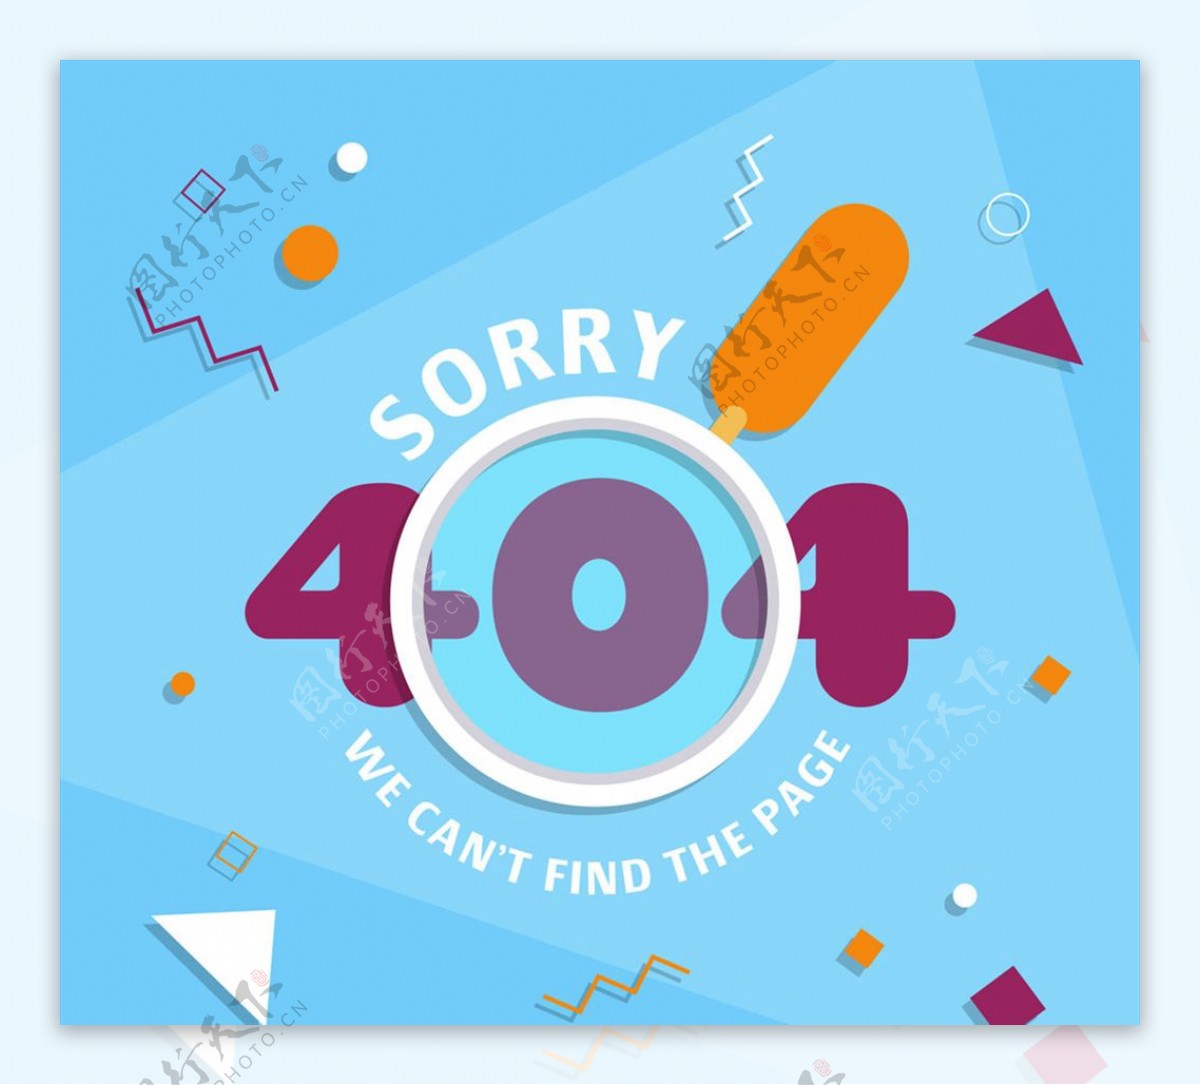 创意404错误页面放大镜